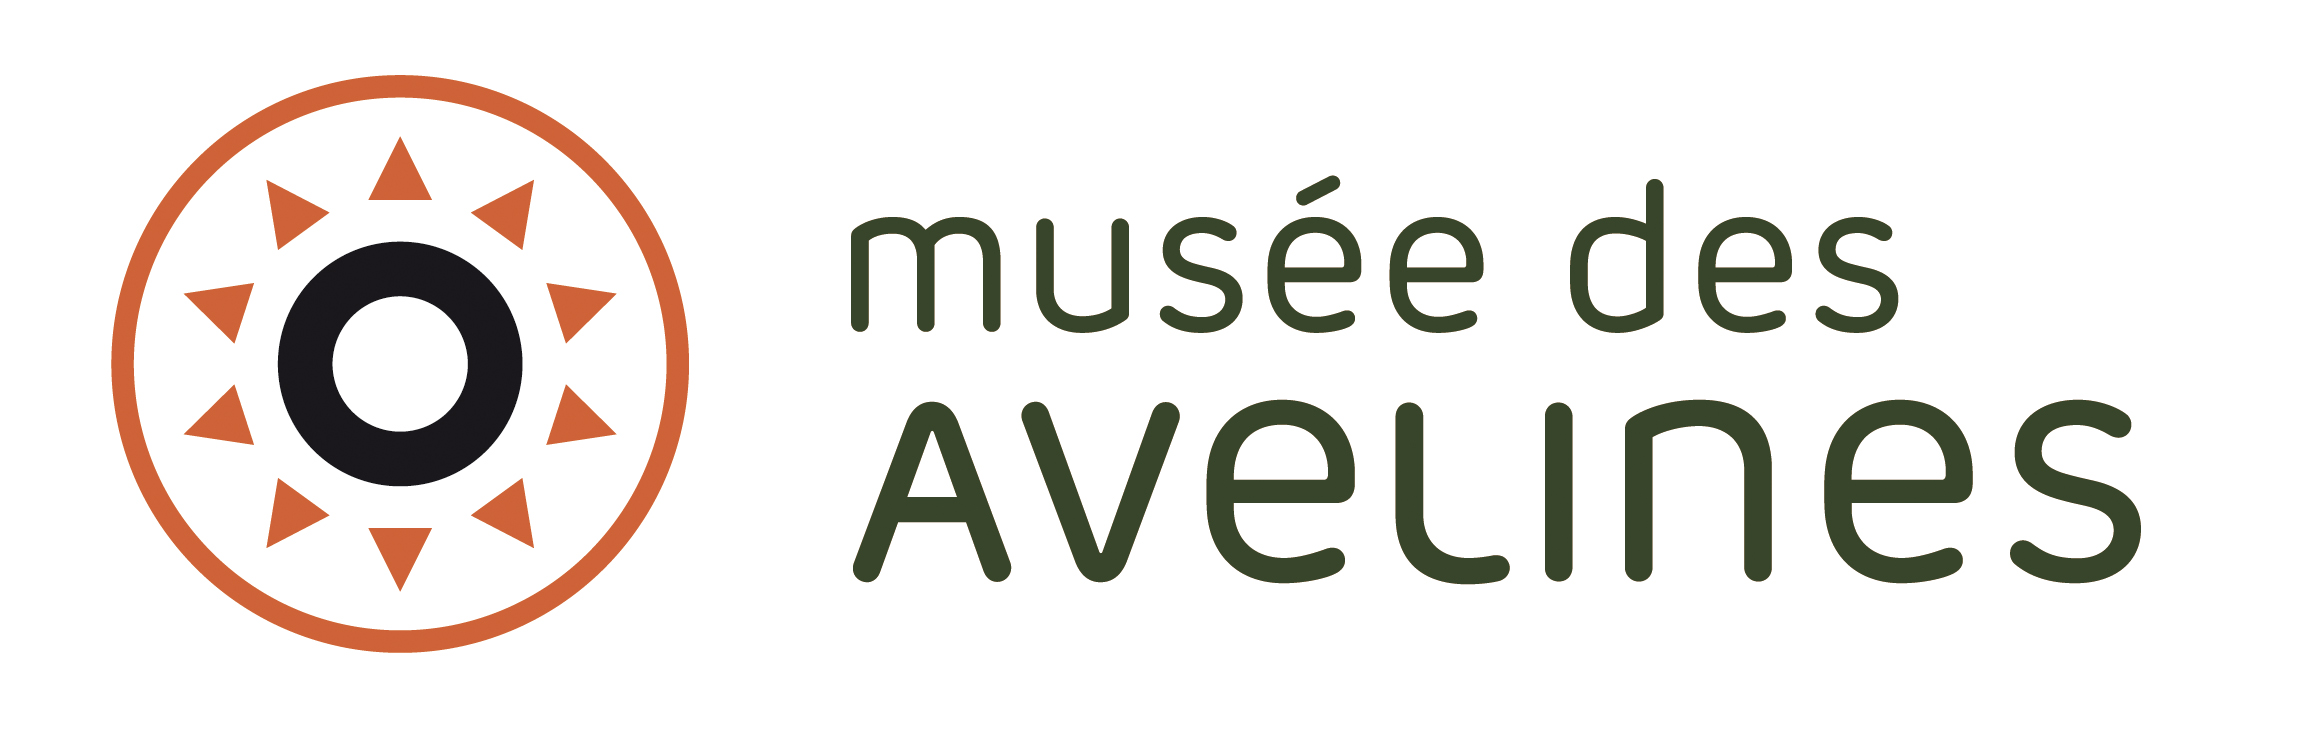 Logo Avelines RVB_1.jpg 